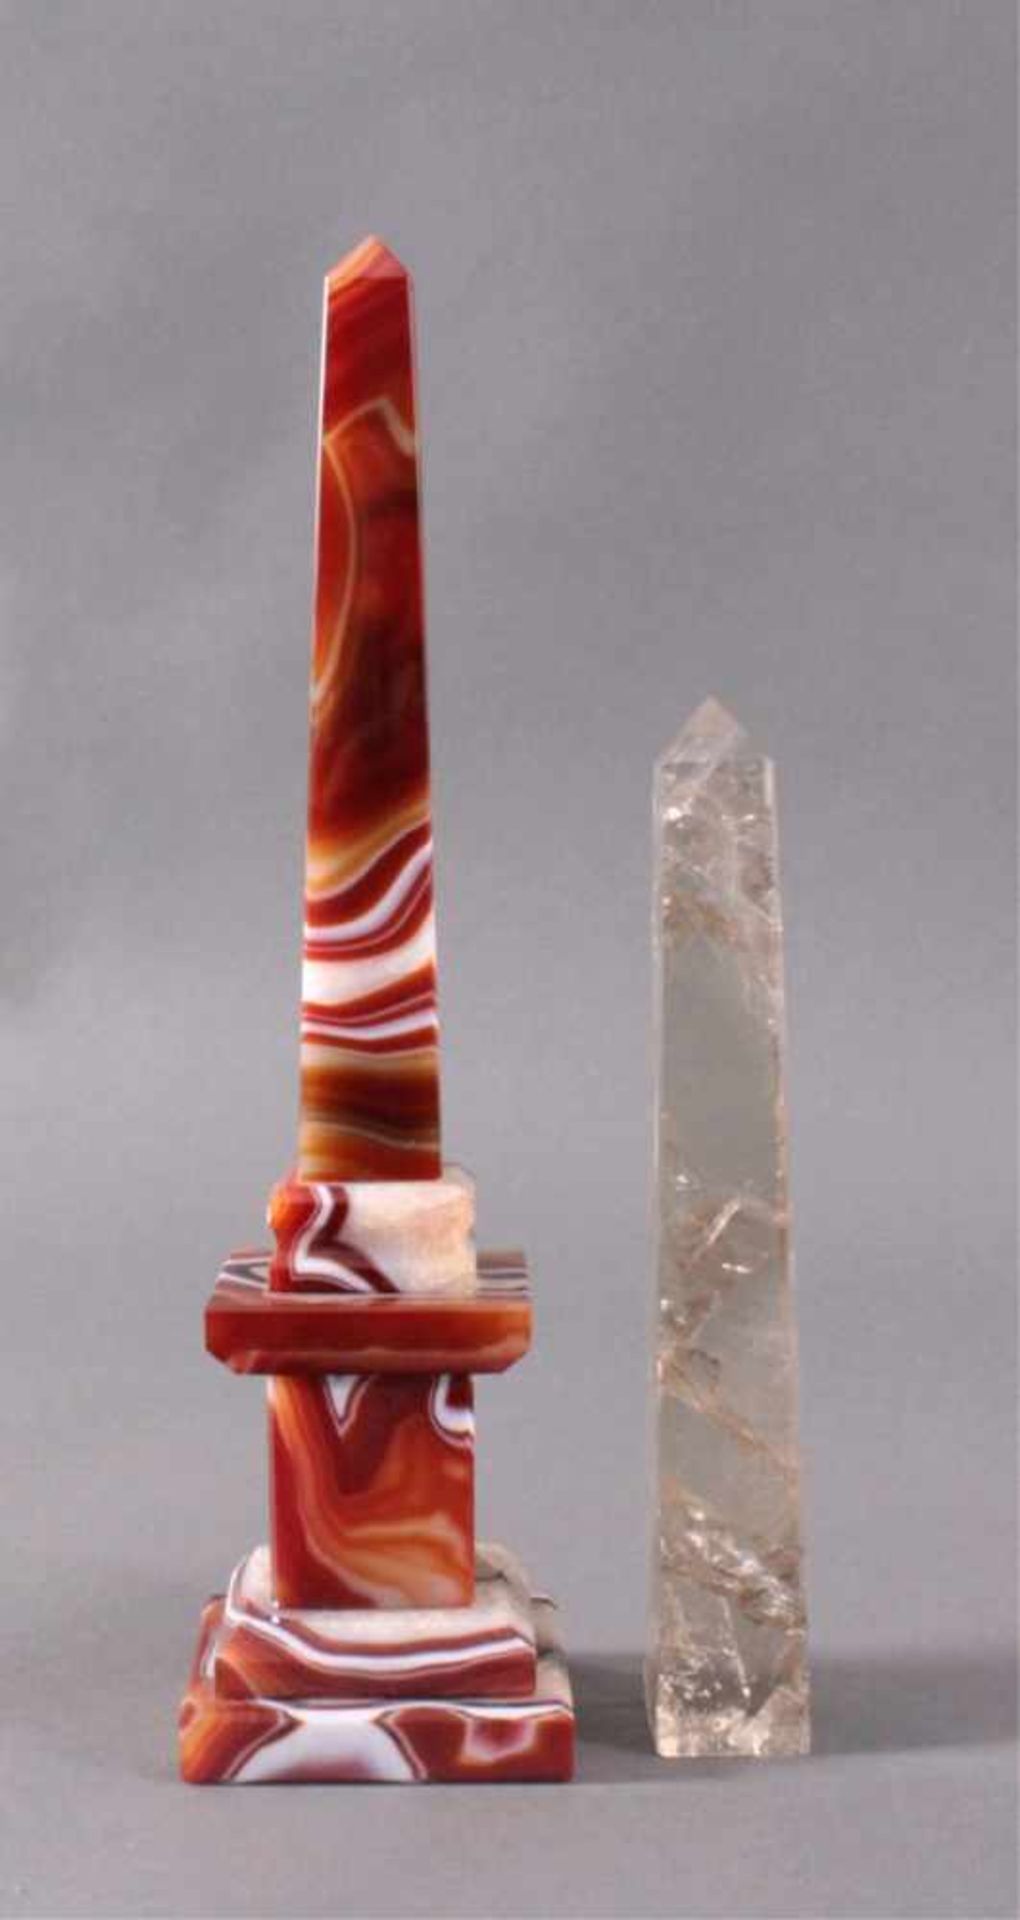 Achat und Rauchquarz ObeliskenRauchquarz, mit Einschlüsse, ca. H-23 cm, ca. 0,550g.Achat Obelisk